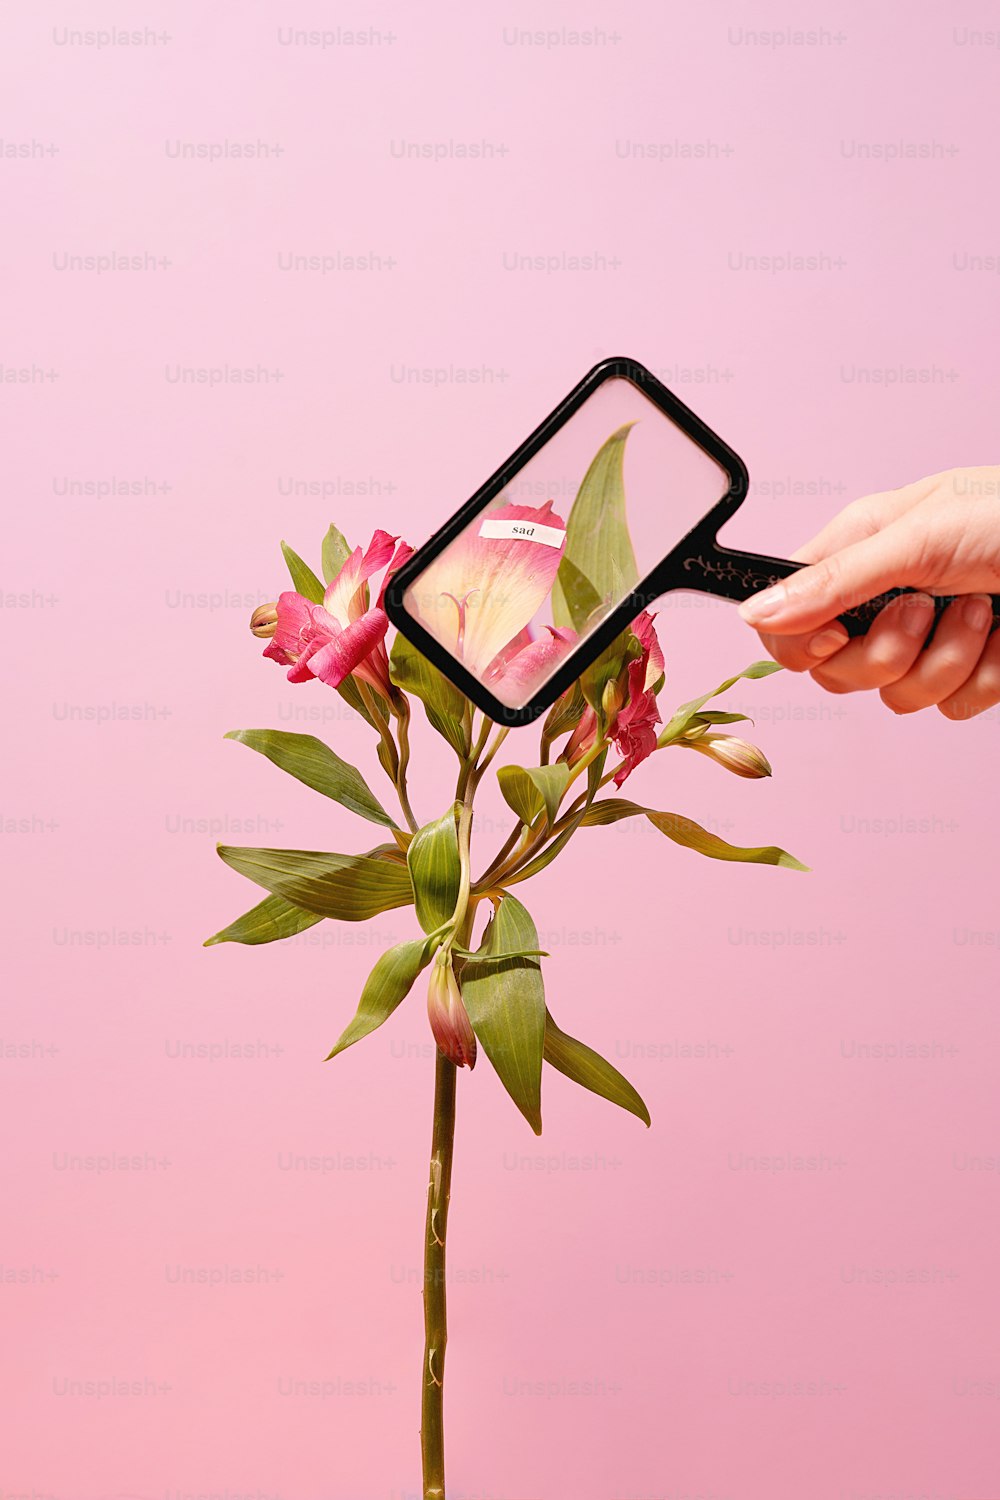 uma pessoa segurando uma flor na frente de um fundo rosa